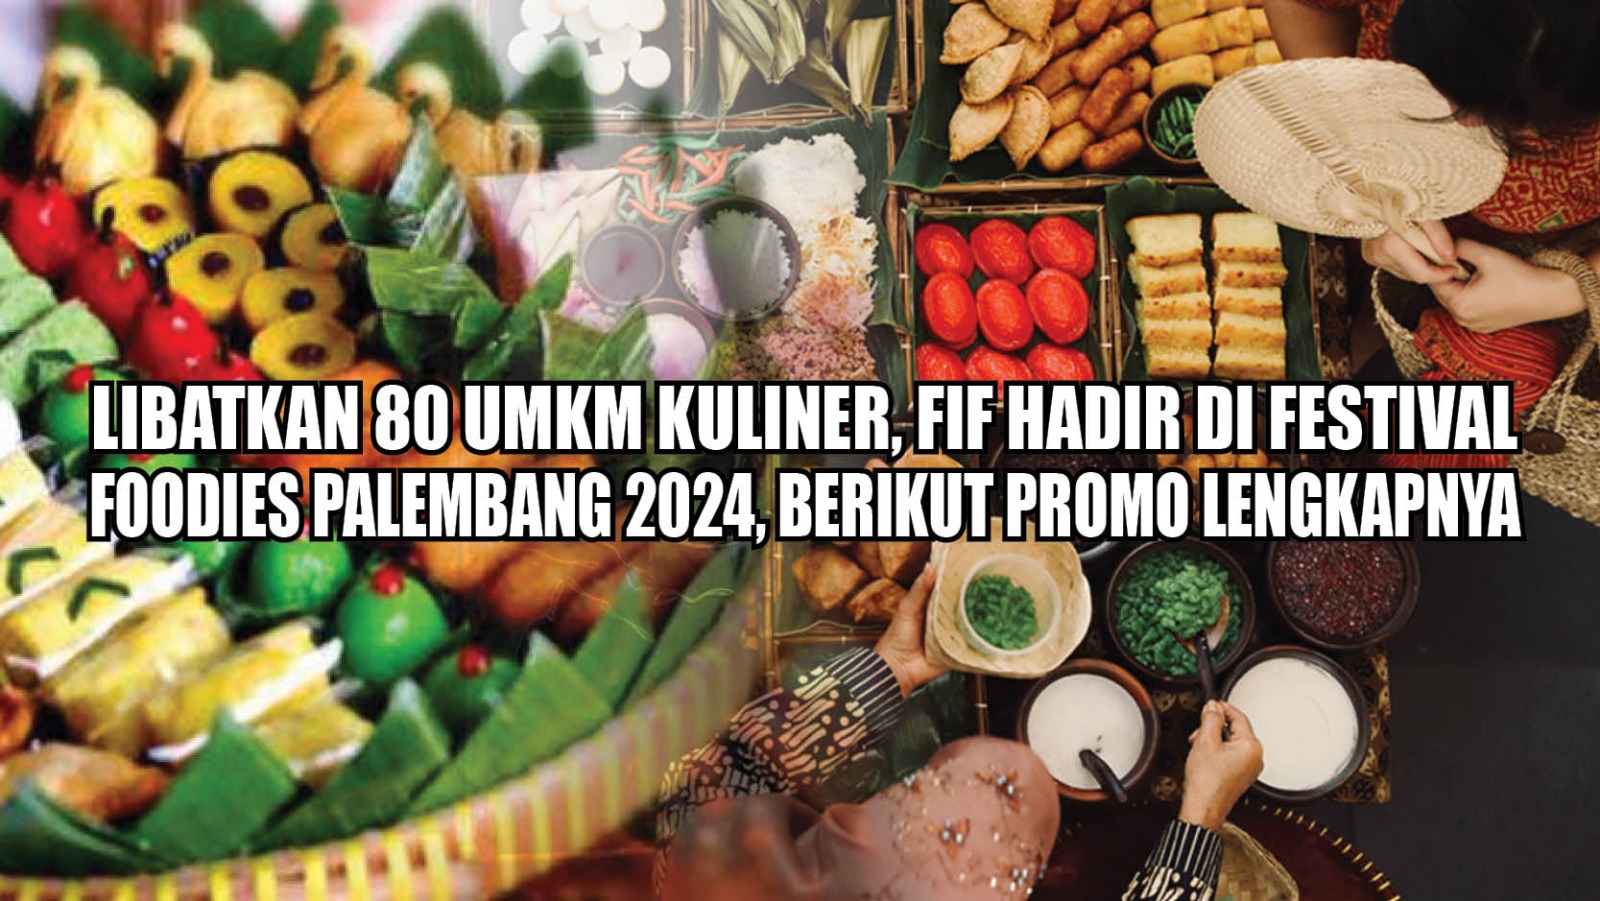 Libatkan 80 UMKM Kuliner, FIF Hadir di Festival Foodies Palembang 2024, Berikut Promo Menariknya